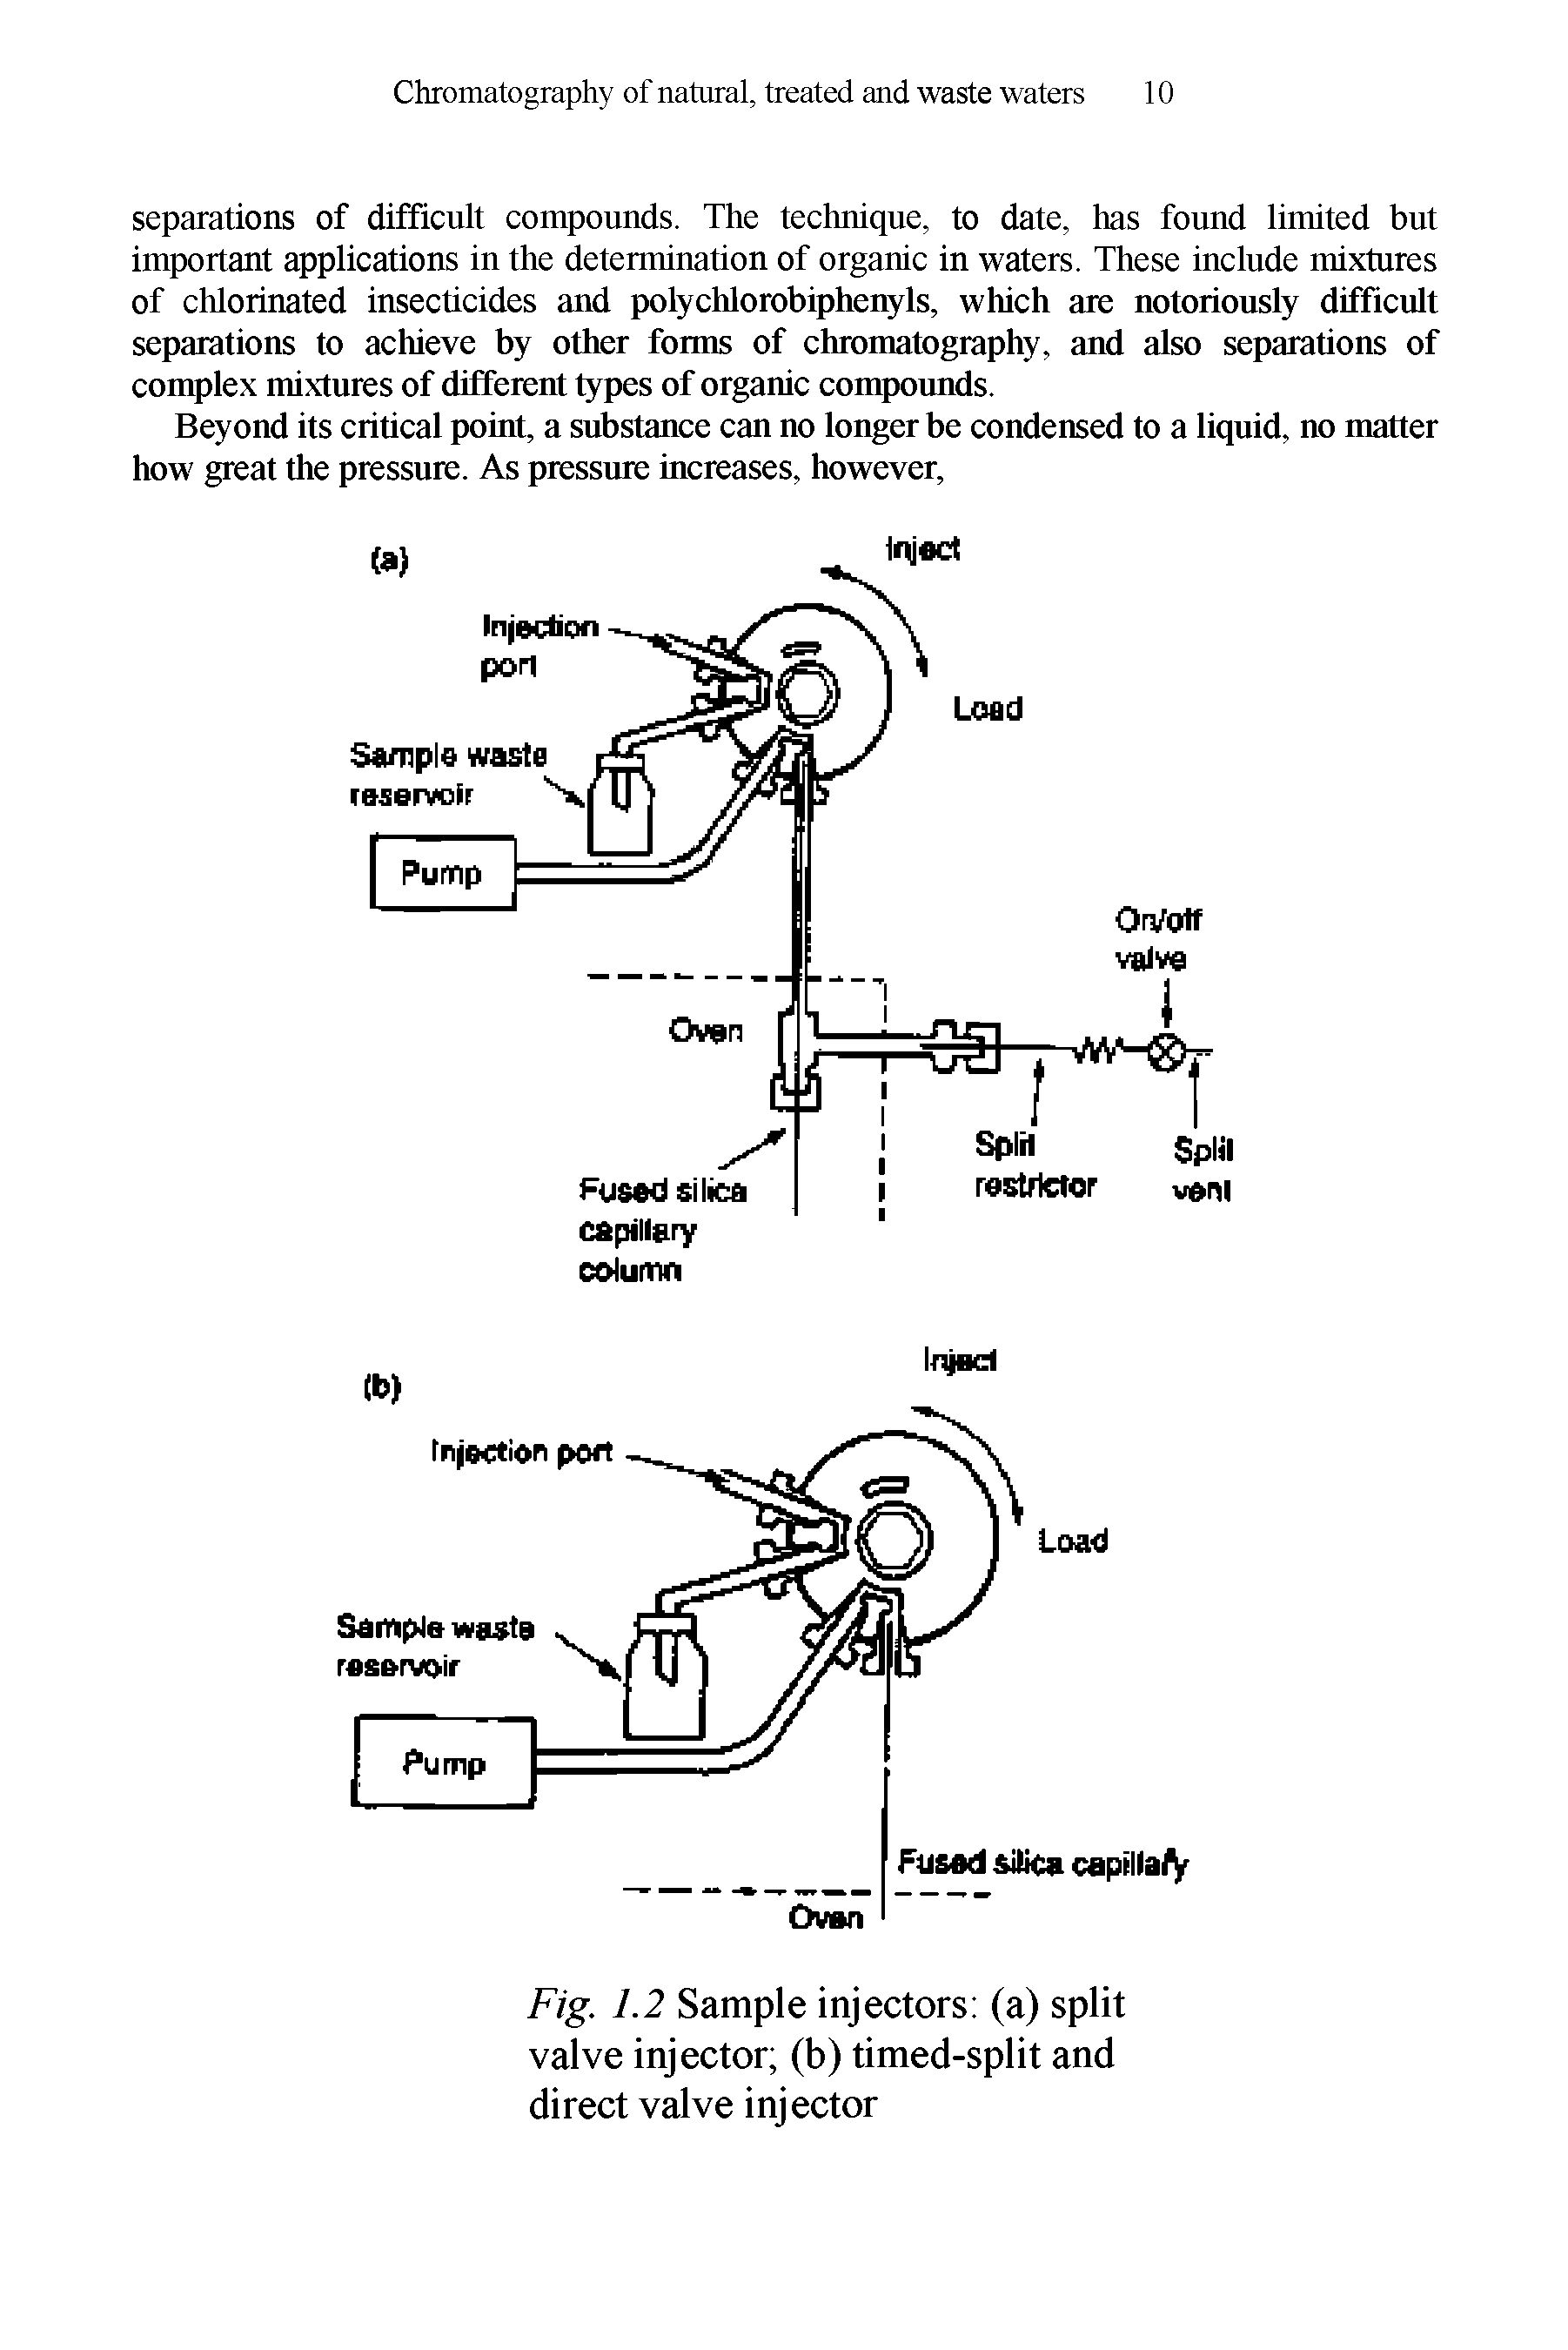 Fig. 1.2 Sample injectors (a) split valve injector (b) timed-split and direct valve injector...